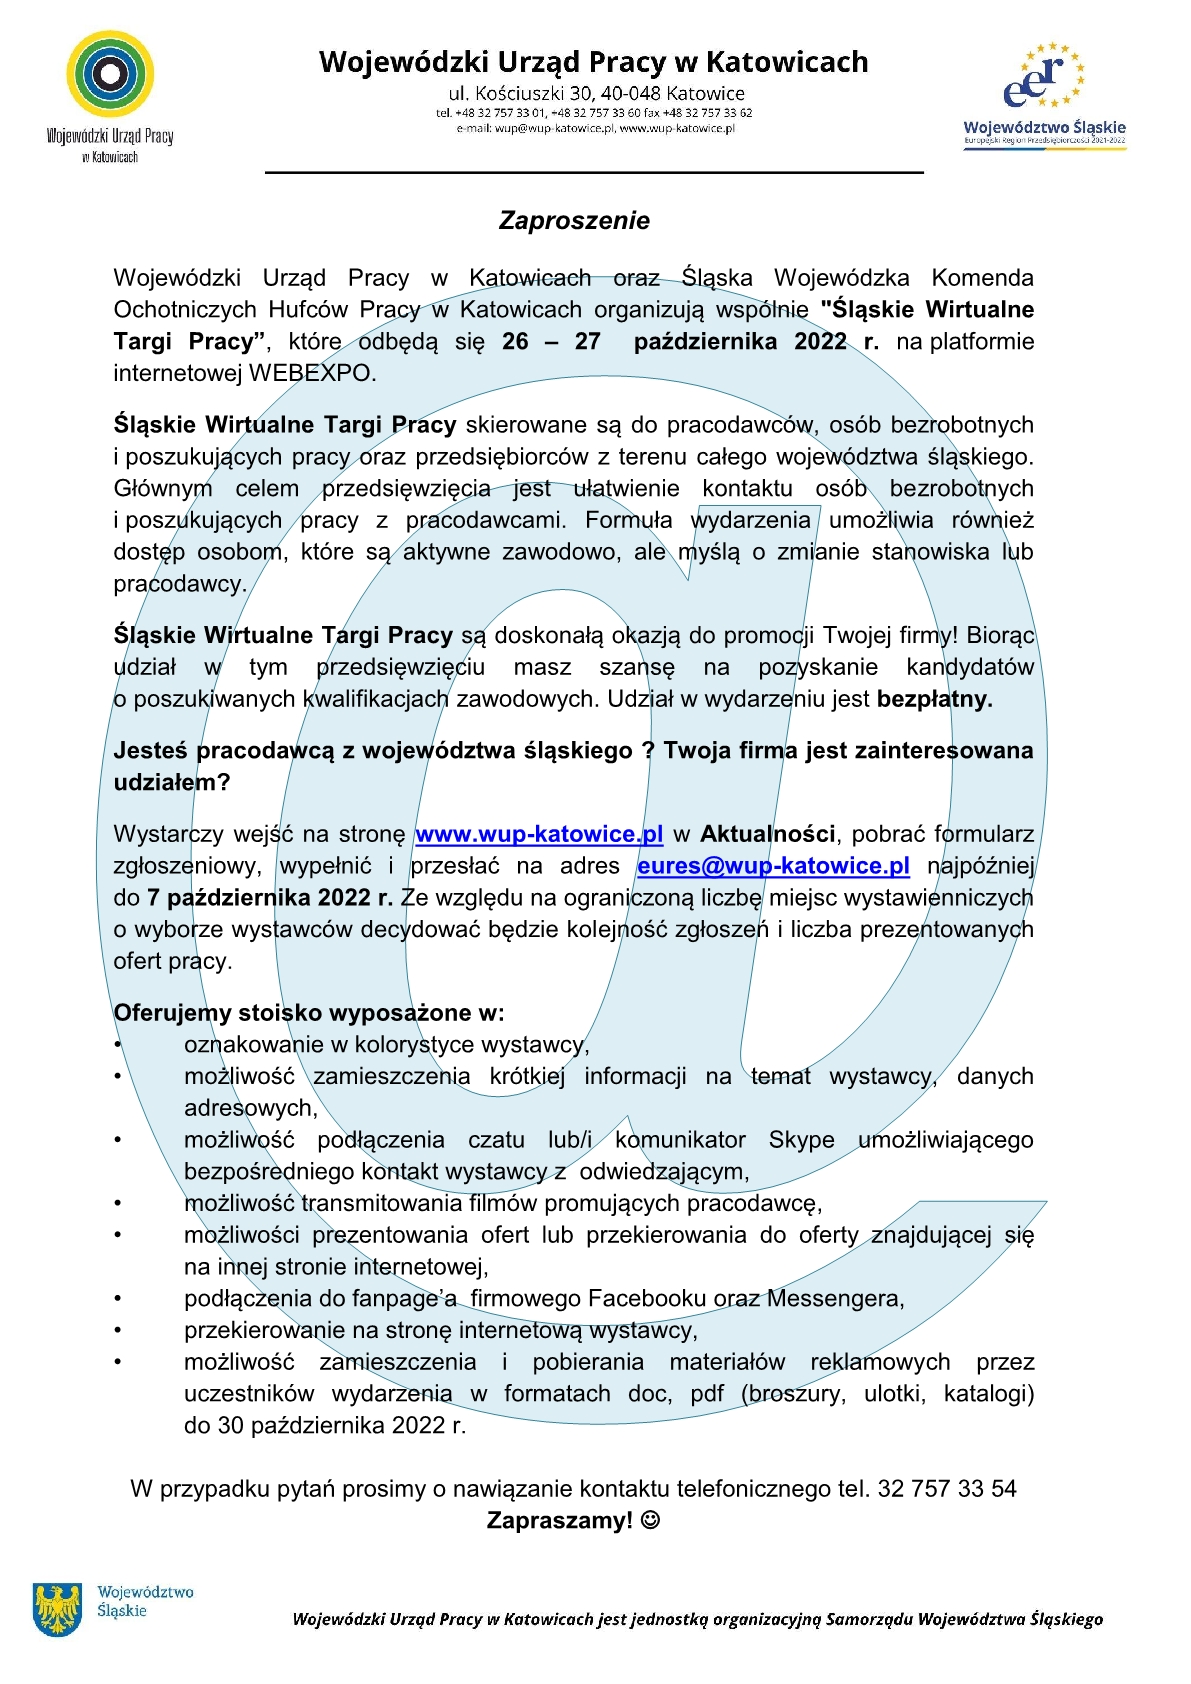 Zaproszenie na Śląskie Wirtualne Targi Pracy w dniach 26-27 października 2022 na platformie internetowej WEBEXPO